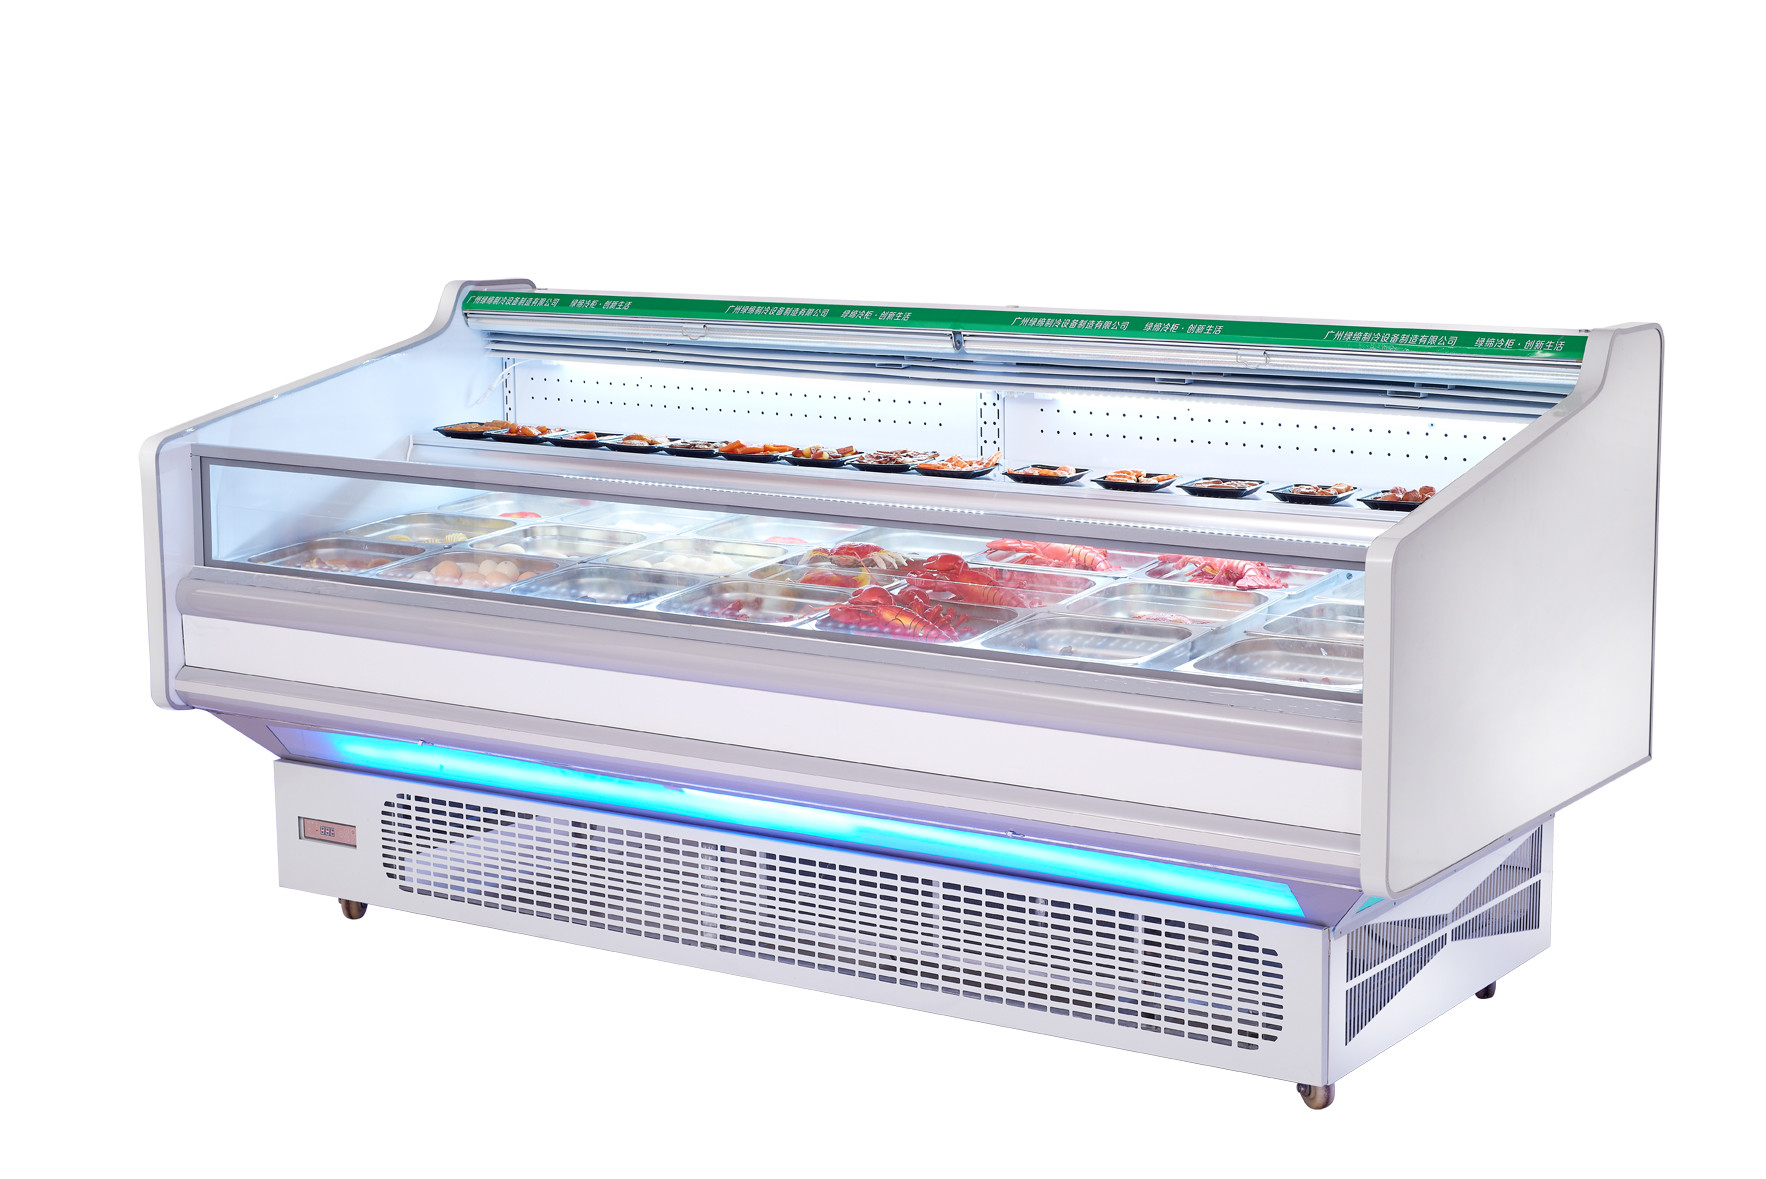 La vetrina aperta di Refrigeratior dell'esposizione della carne fresca dell'annuncio pubblicitario con l'auto disgela